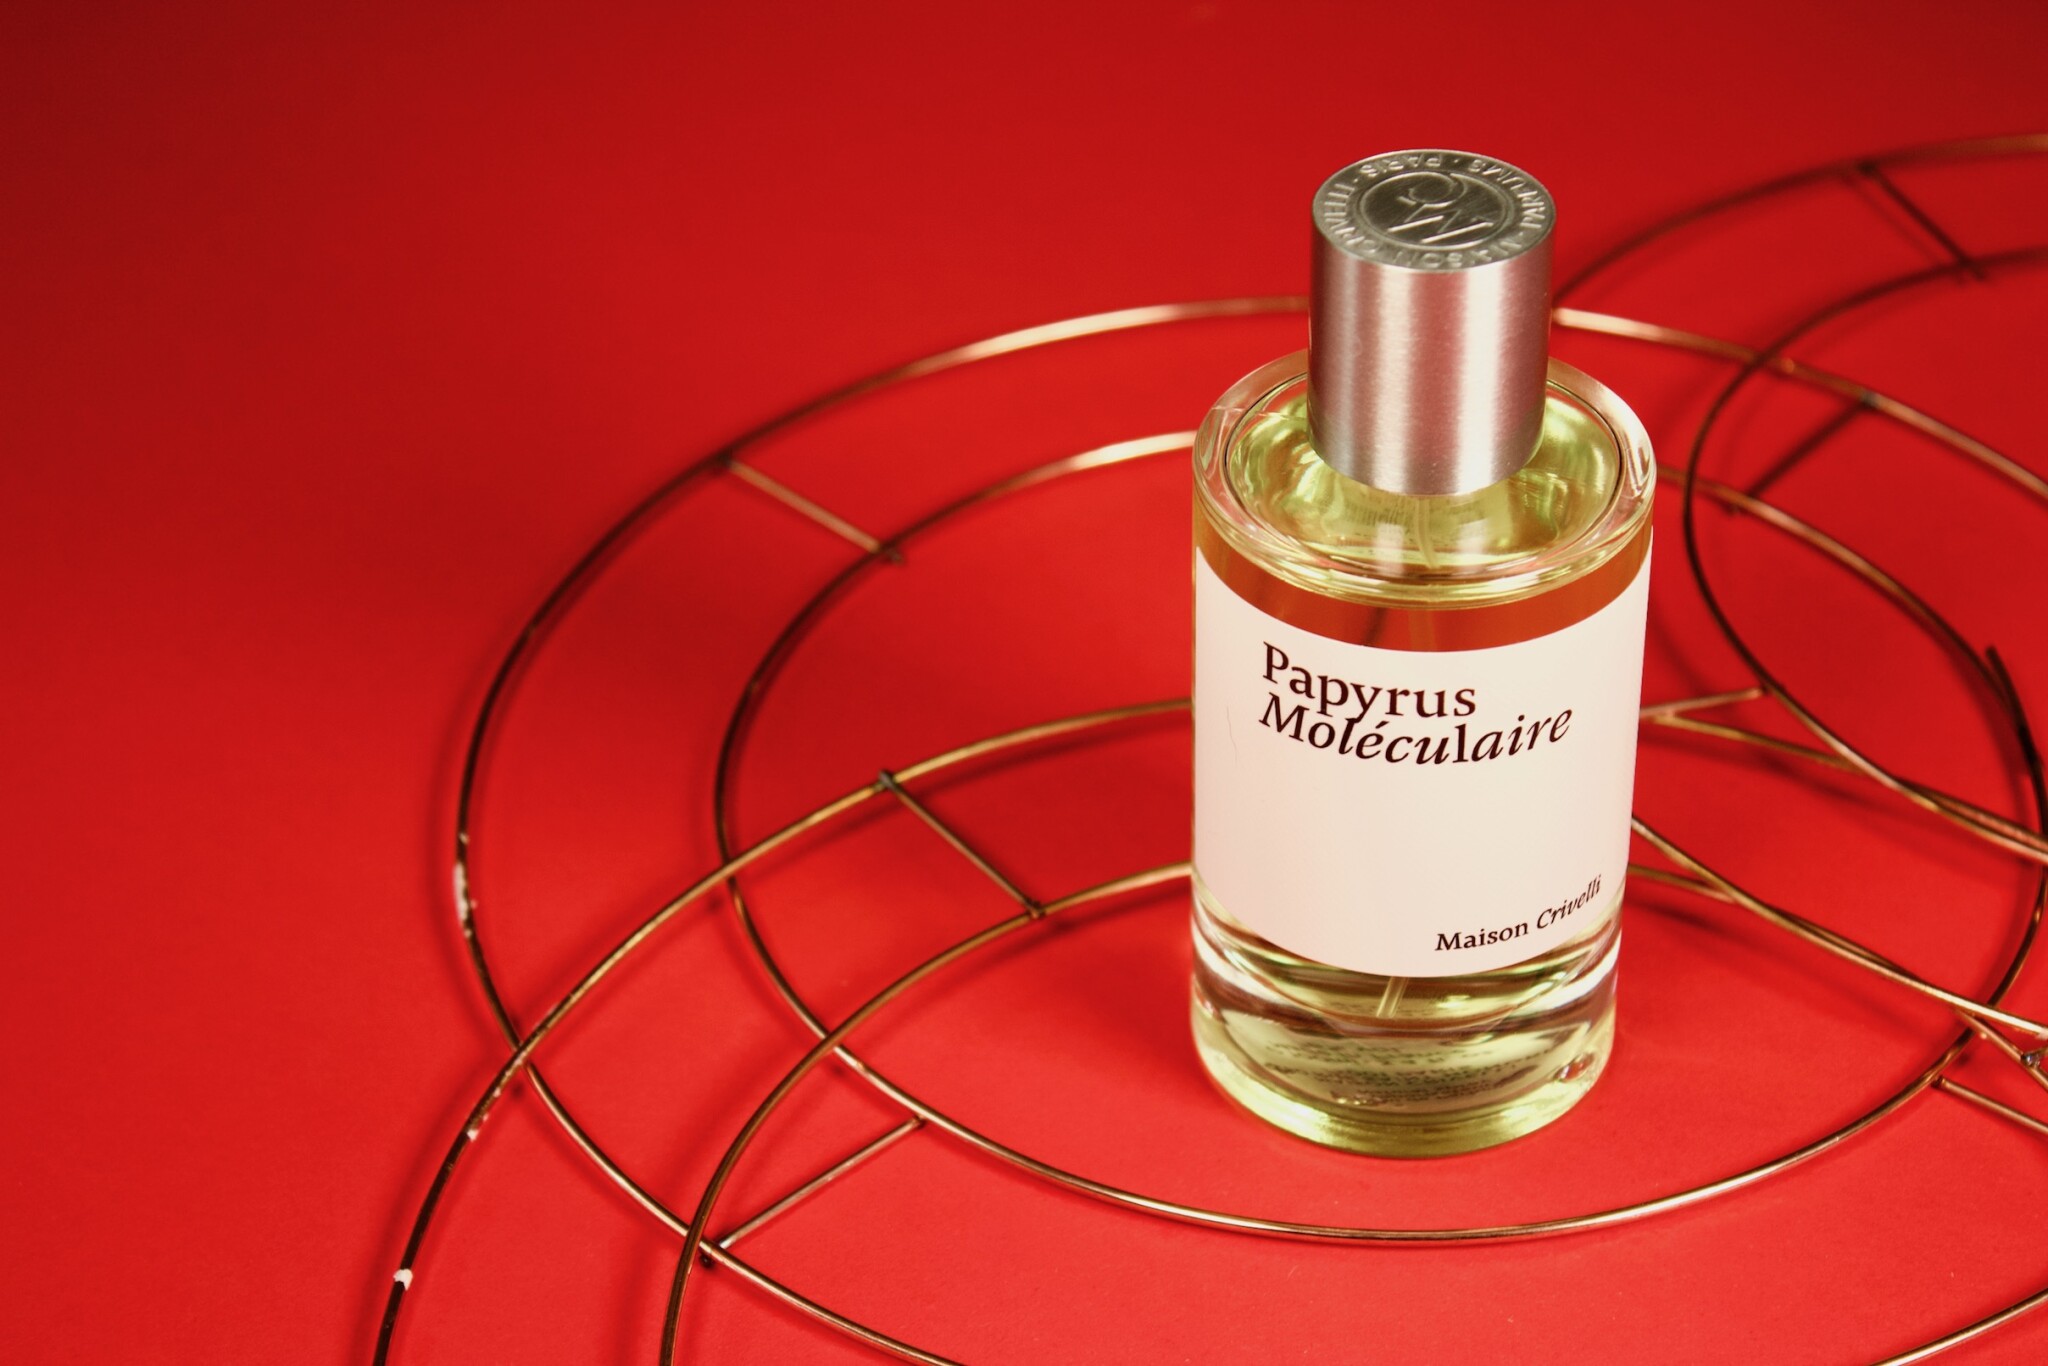 Zážitek z parfému musí být komplexní, říká Francouz, který své vůně prodává i v Praze